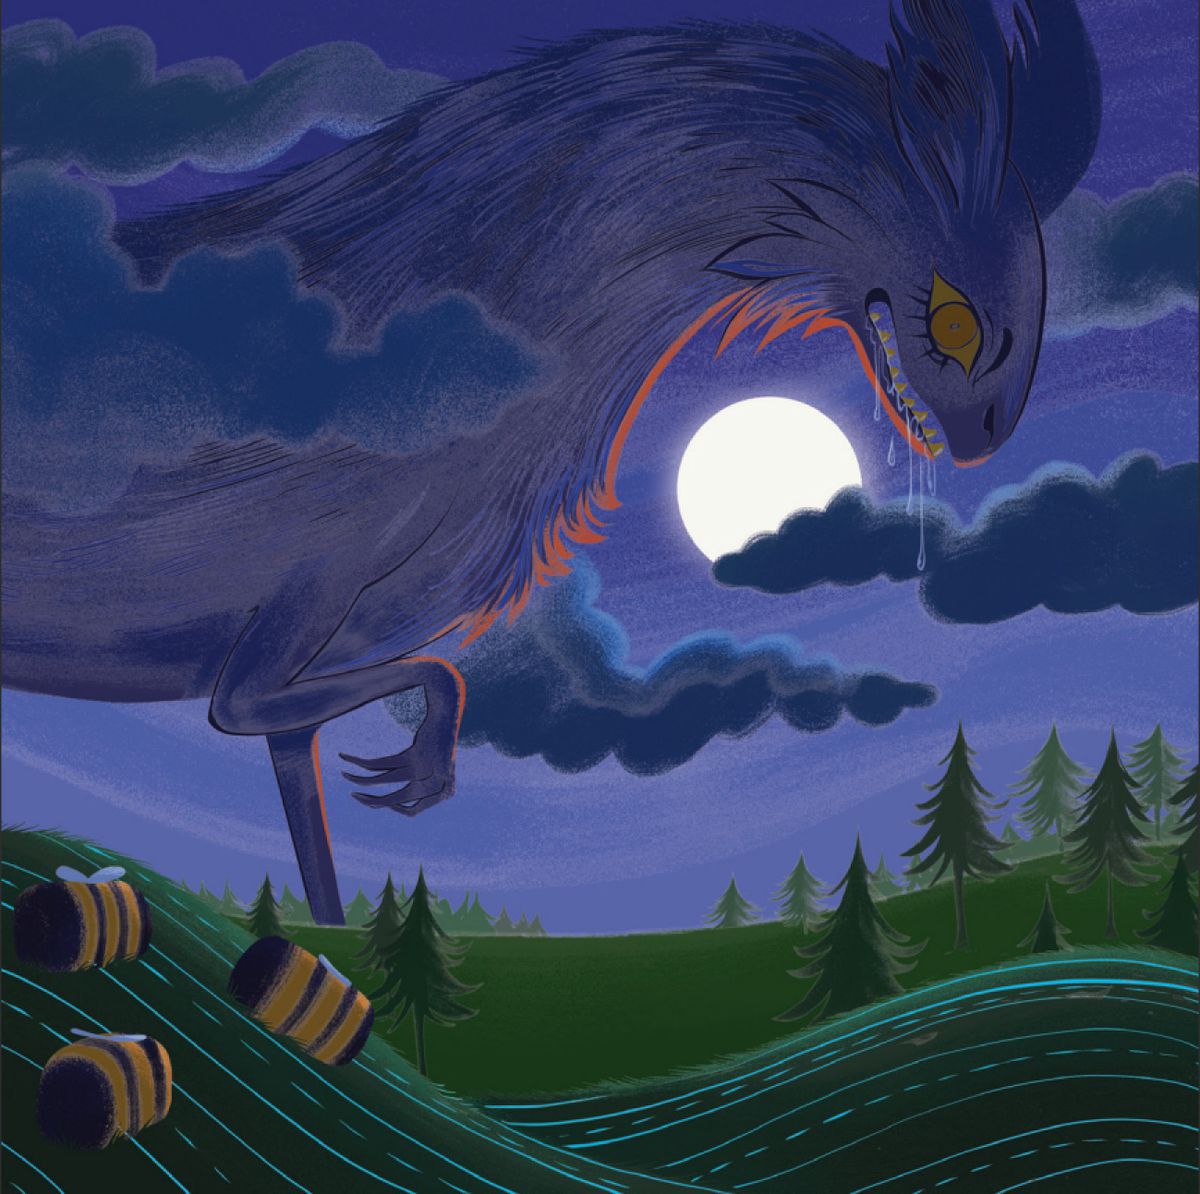 Un'enorme bestia si alza sopra le nuvole durante la luna piena, con la saliva che gocciola dalle fauci.  Gli occhi gialli corrispondono alle api giganti che dormono su una collina nelle vicinanze.